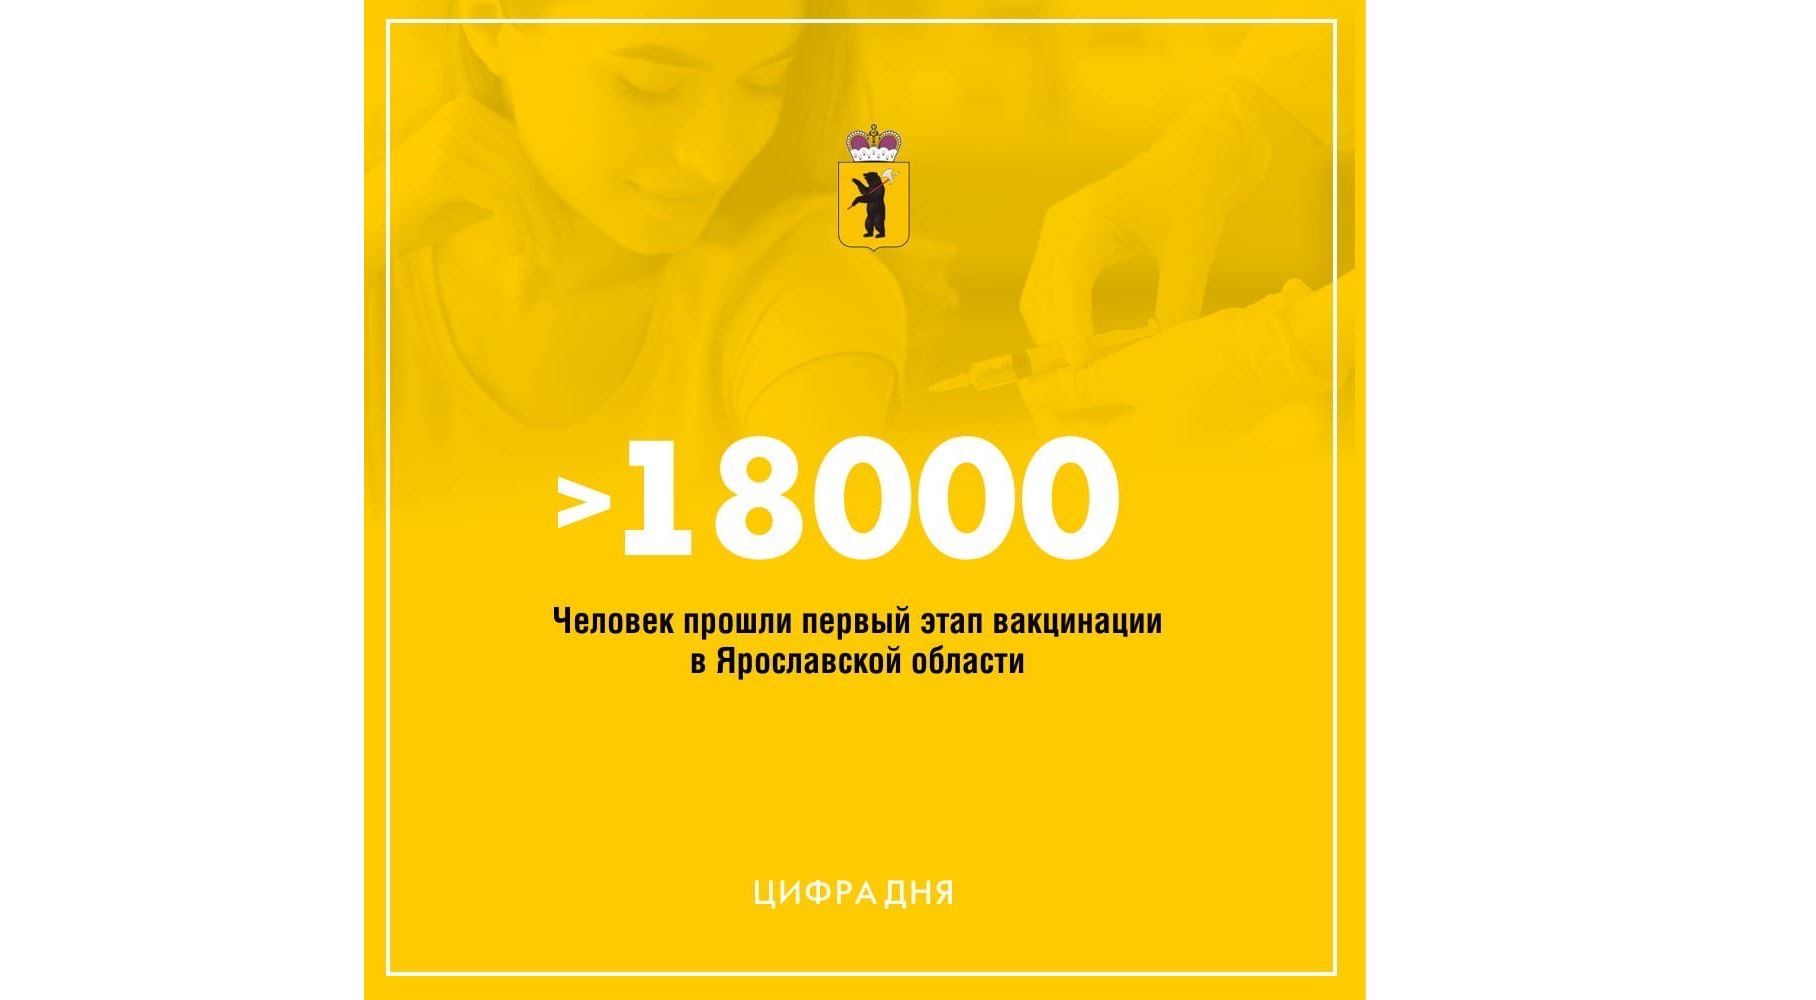 Дмитрий Миронов: в Ярославской области более 18 тысяч человек прошли первый этап вакцинации от коронавируса